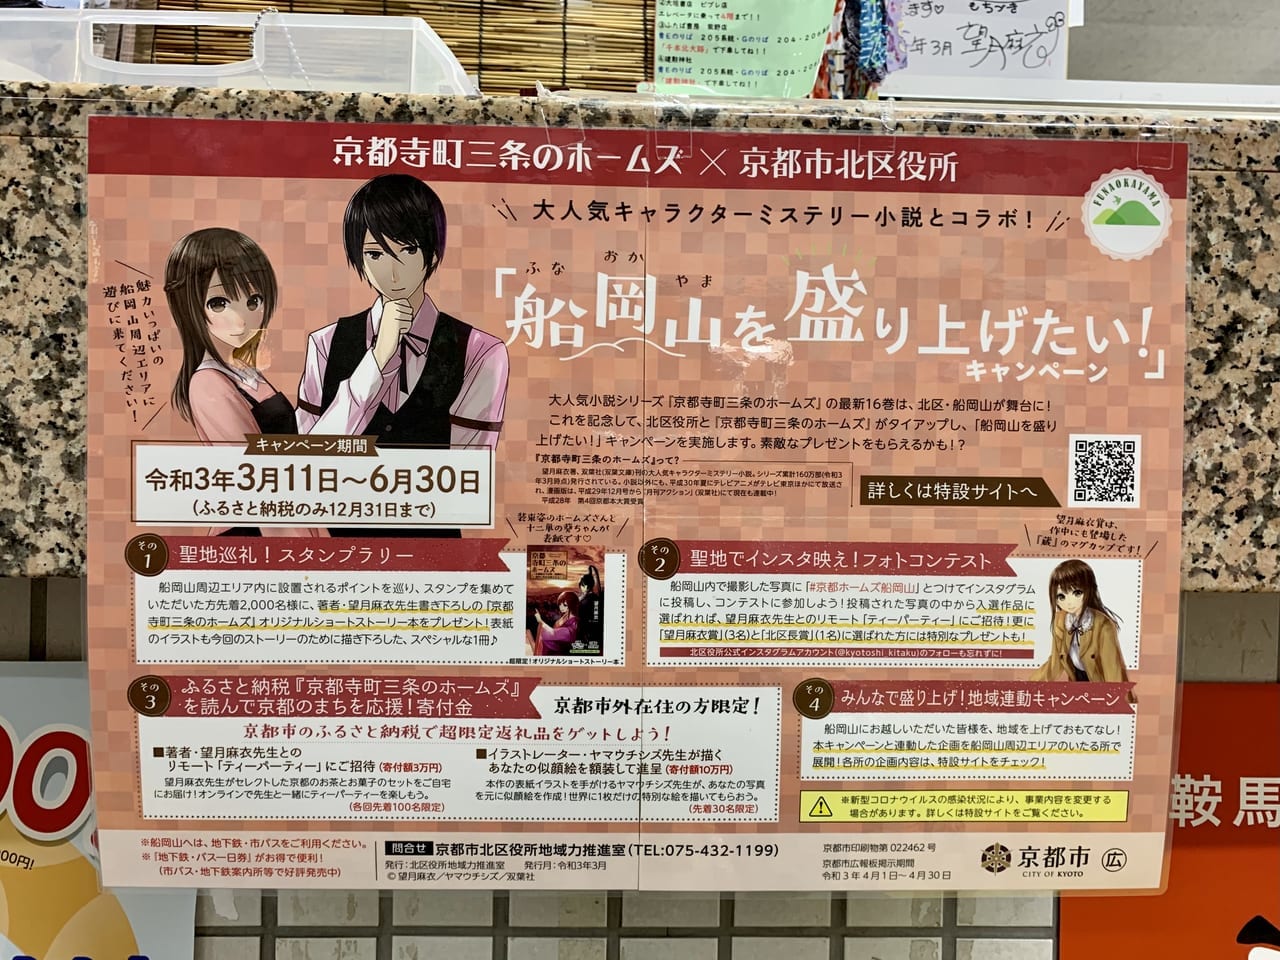 船岡山を盛り上げたいキャンペーンのポスター